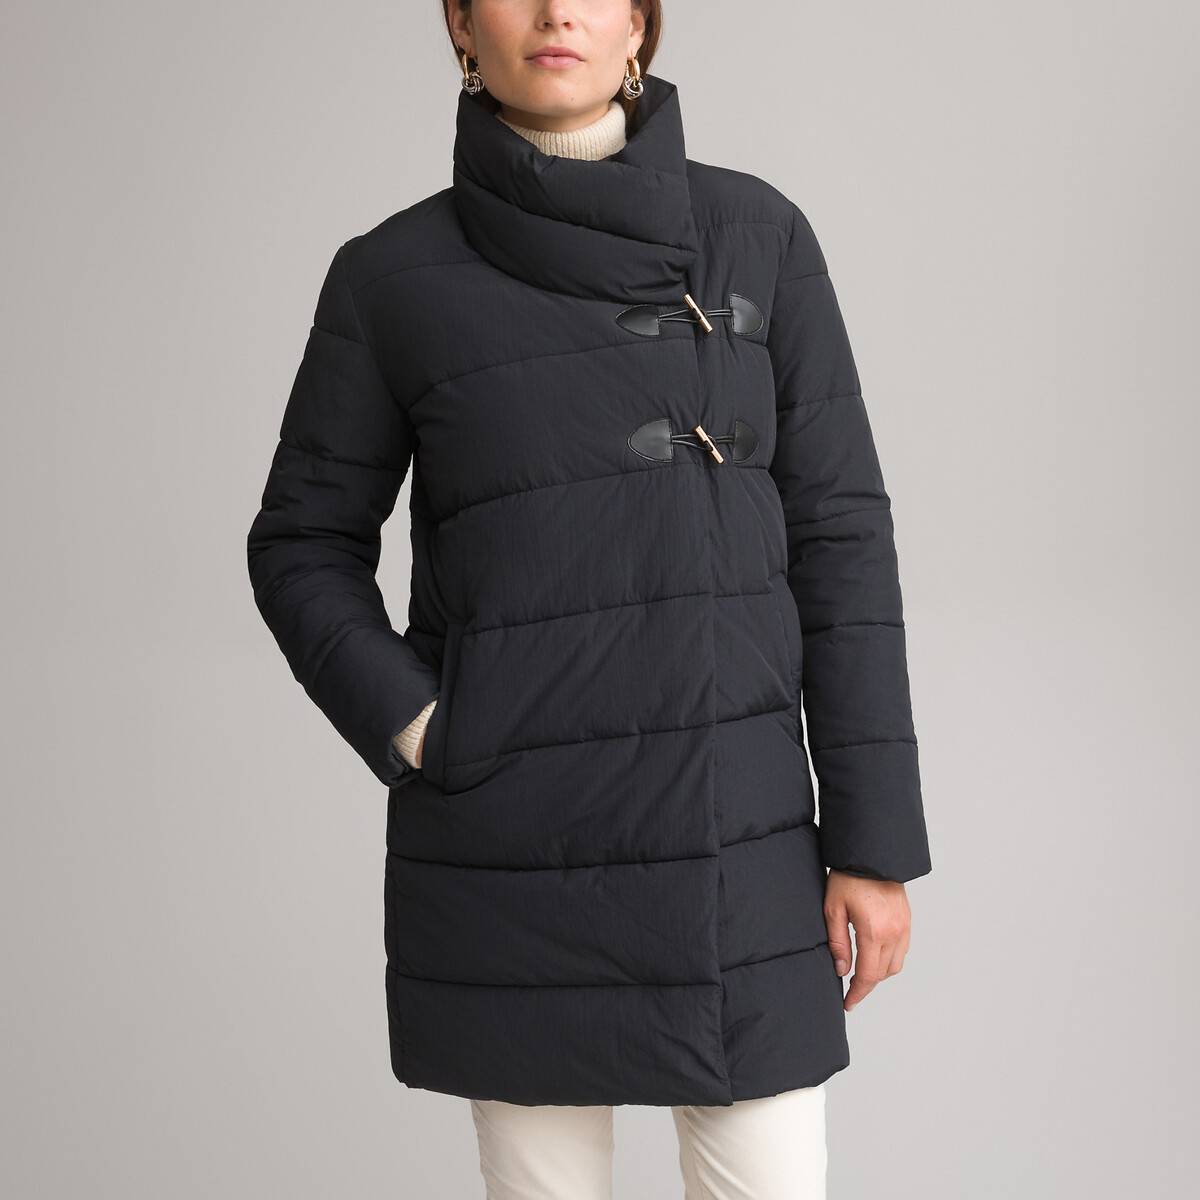 Куртка Стеганая средней длины застежка на молнию зимняя модель 36 (FR) - 42 (RUS) черный LaRedoute, размер 36 (FR) - 42 (RUS)